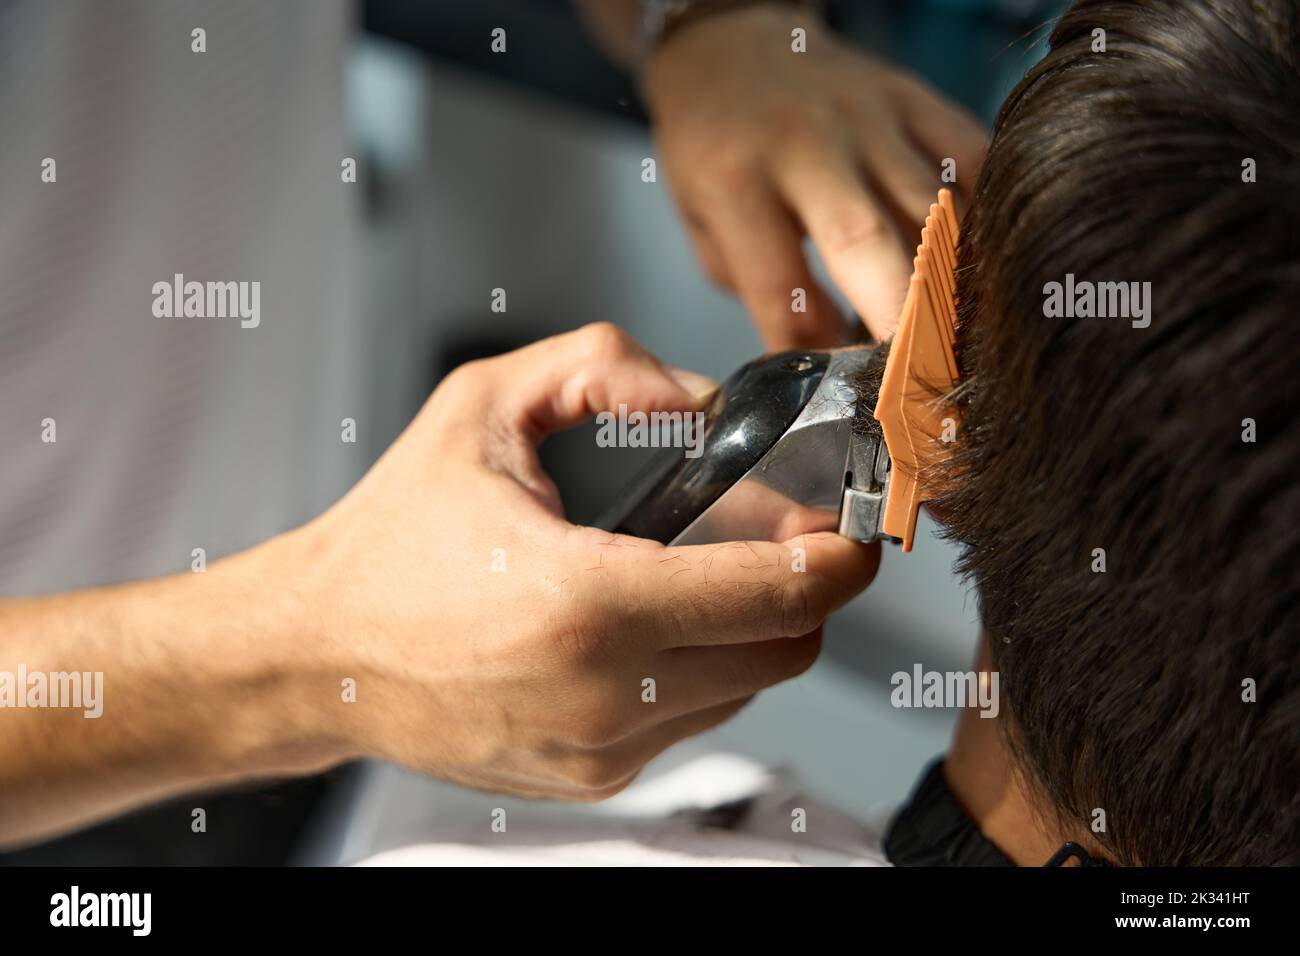 Specialista esperto di capelli che usa il regolacapelli per tagliare i capelli dell'uomo Foto Stock